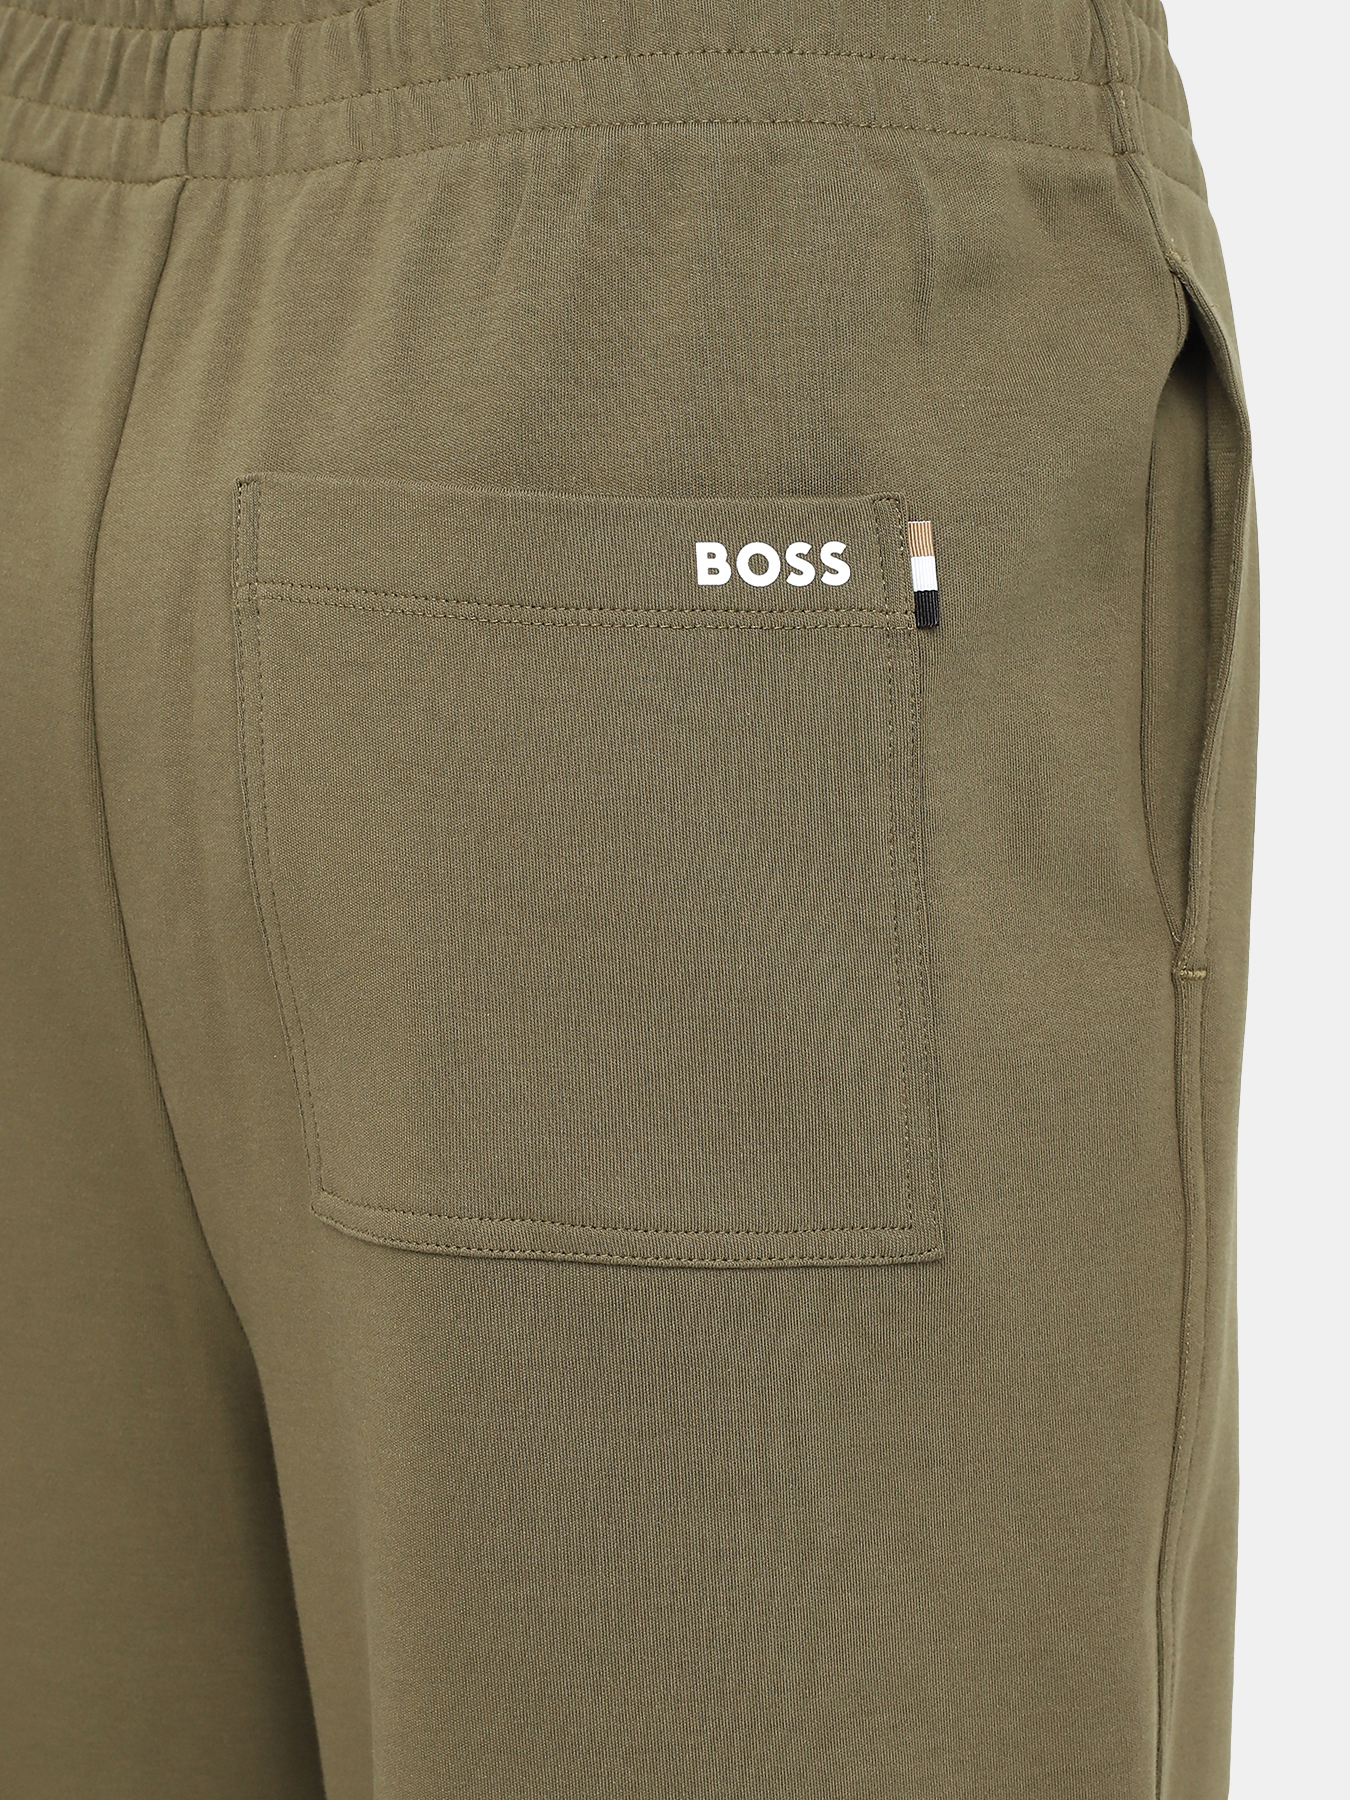 Спортивные брюки Enatea BOSS 414132-042, цвет хаки, размер 42-44 - фото 4